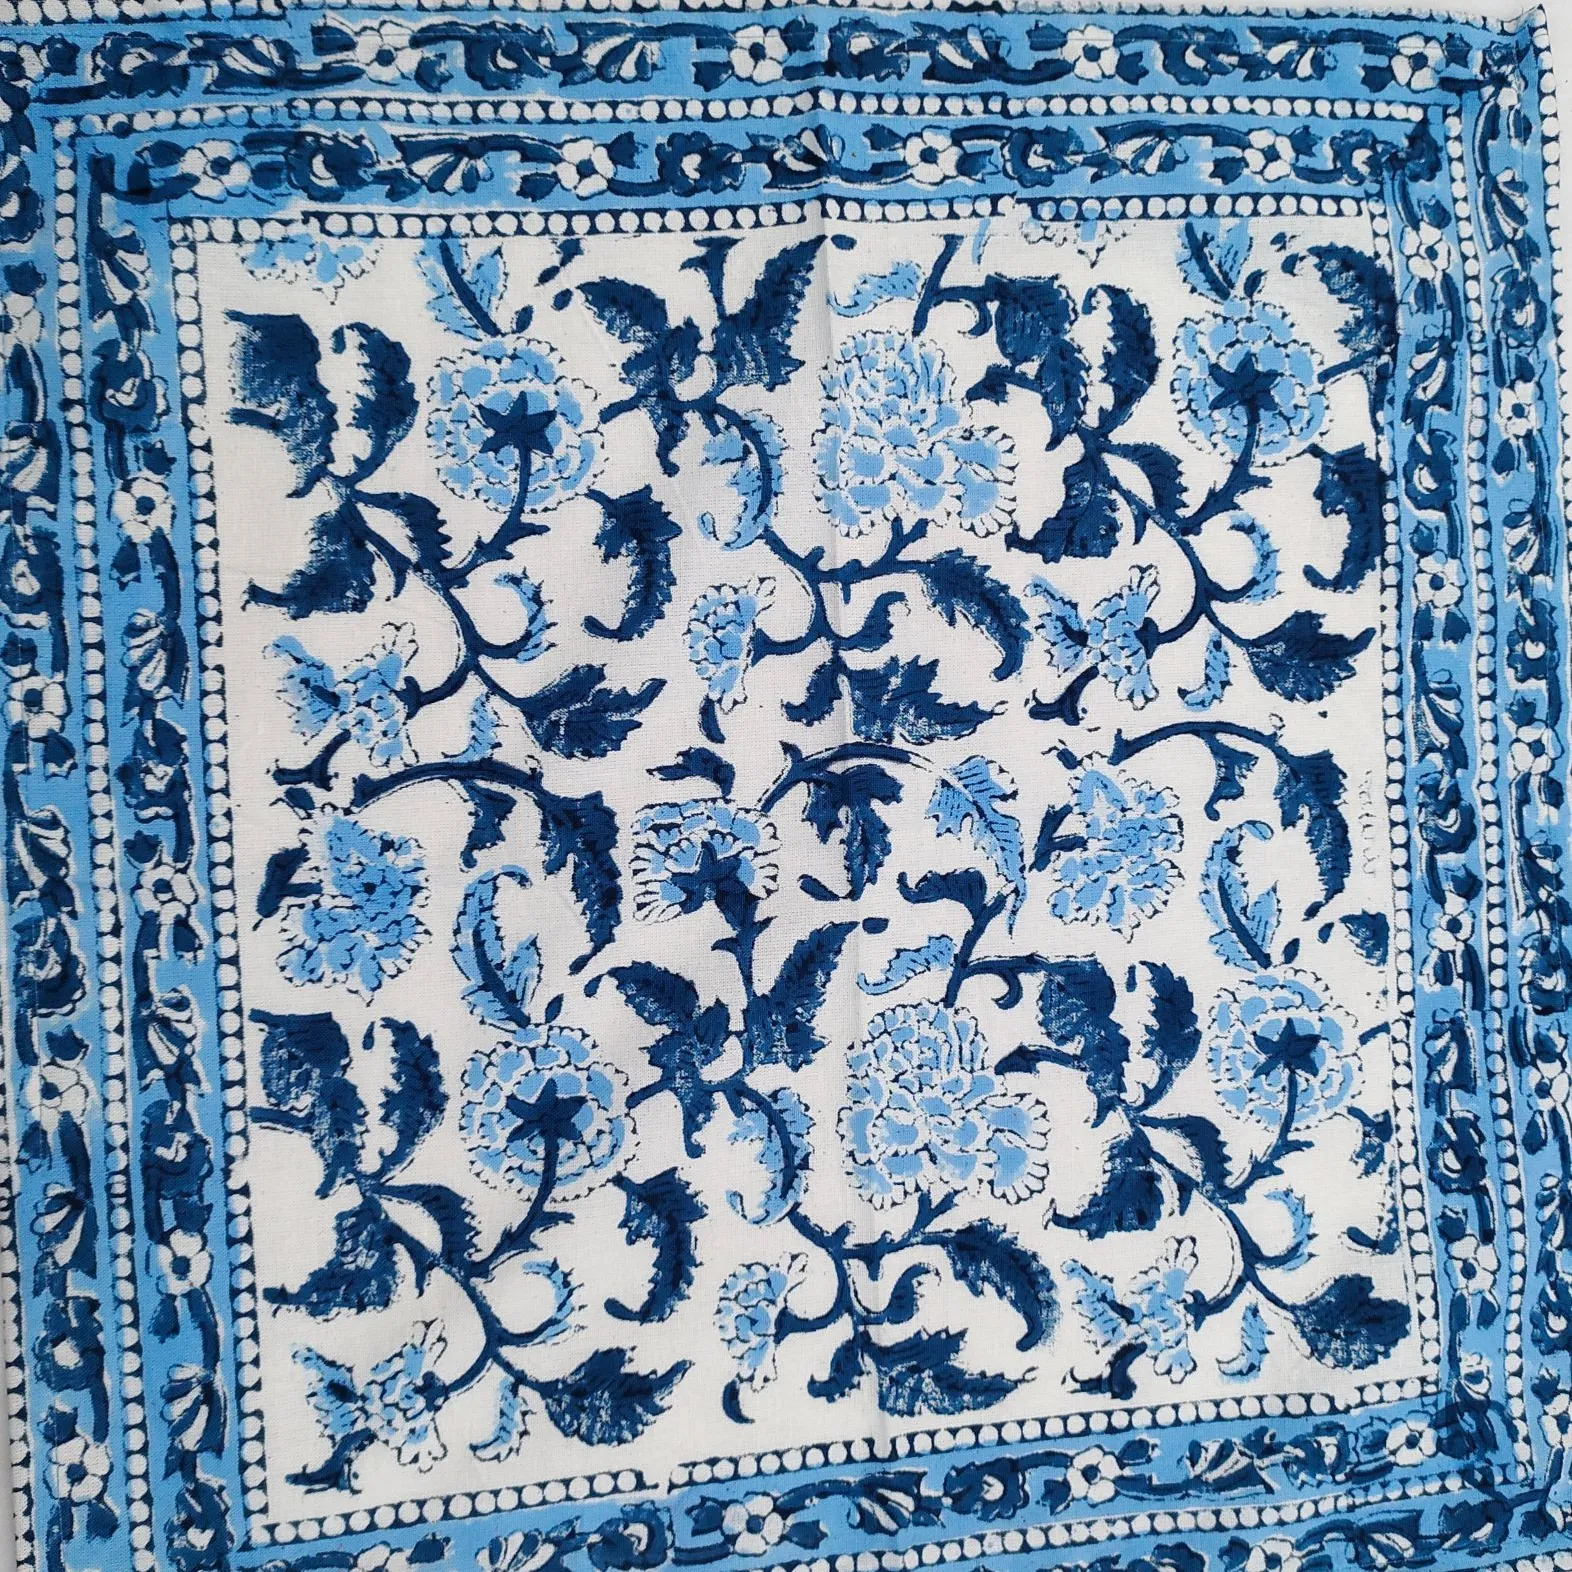 Manteles Individuales de algodón indio para mesa de comedor, manteles individuales lavables con estampado de hoja curva, color azul